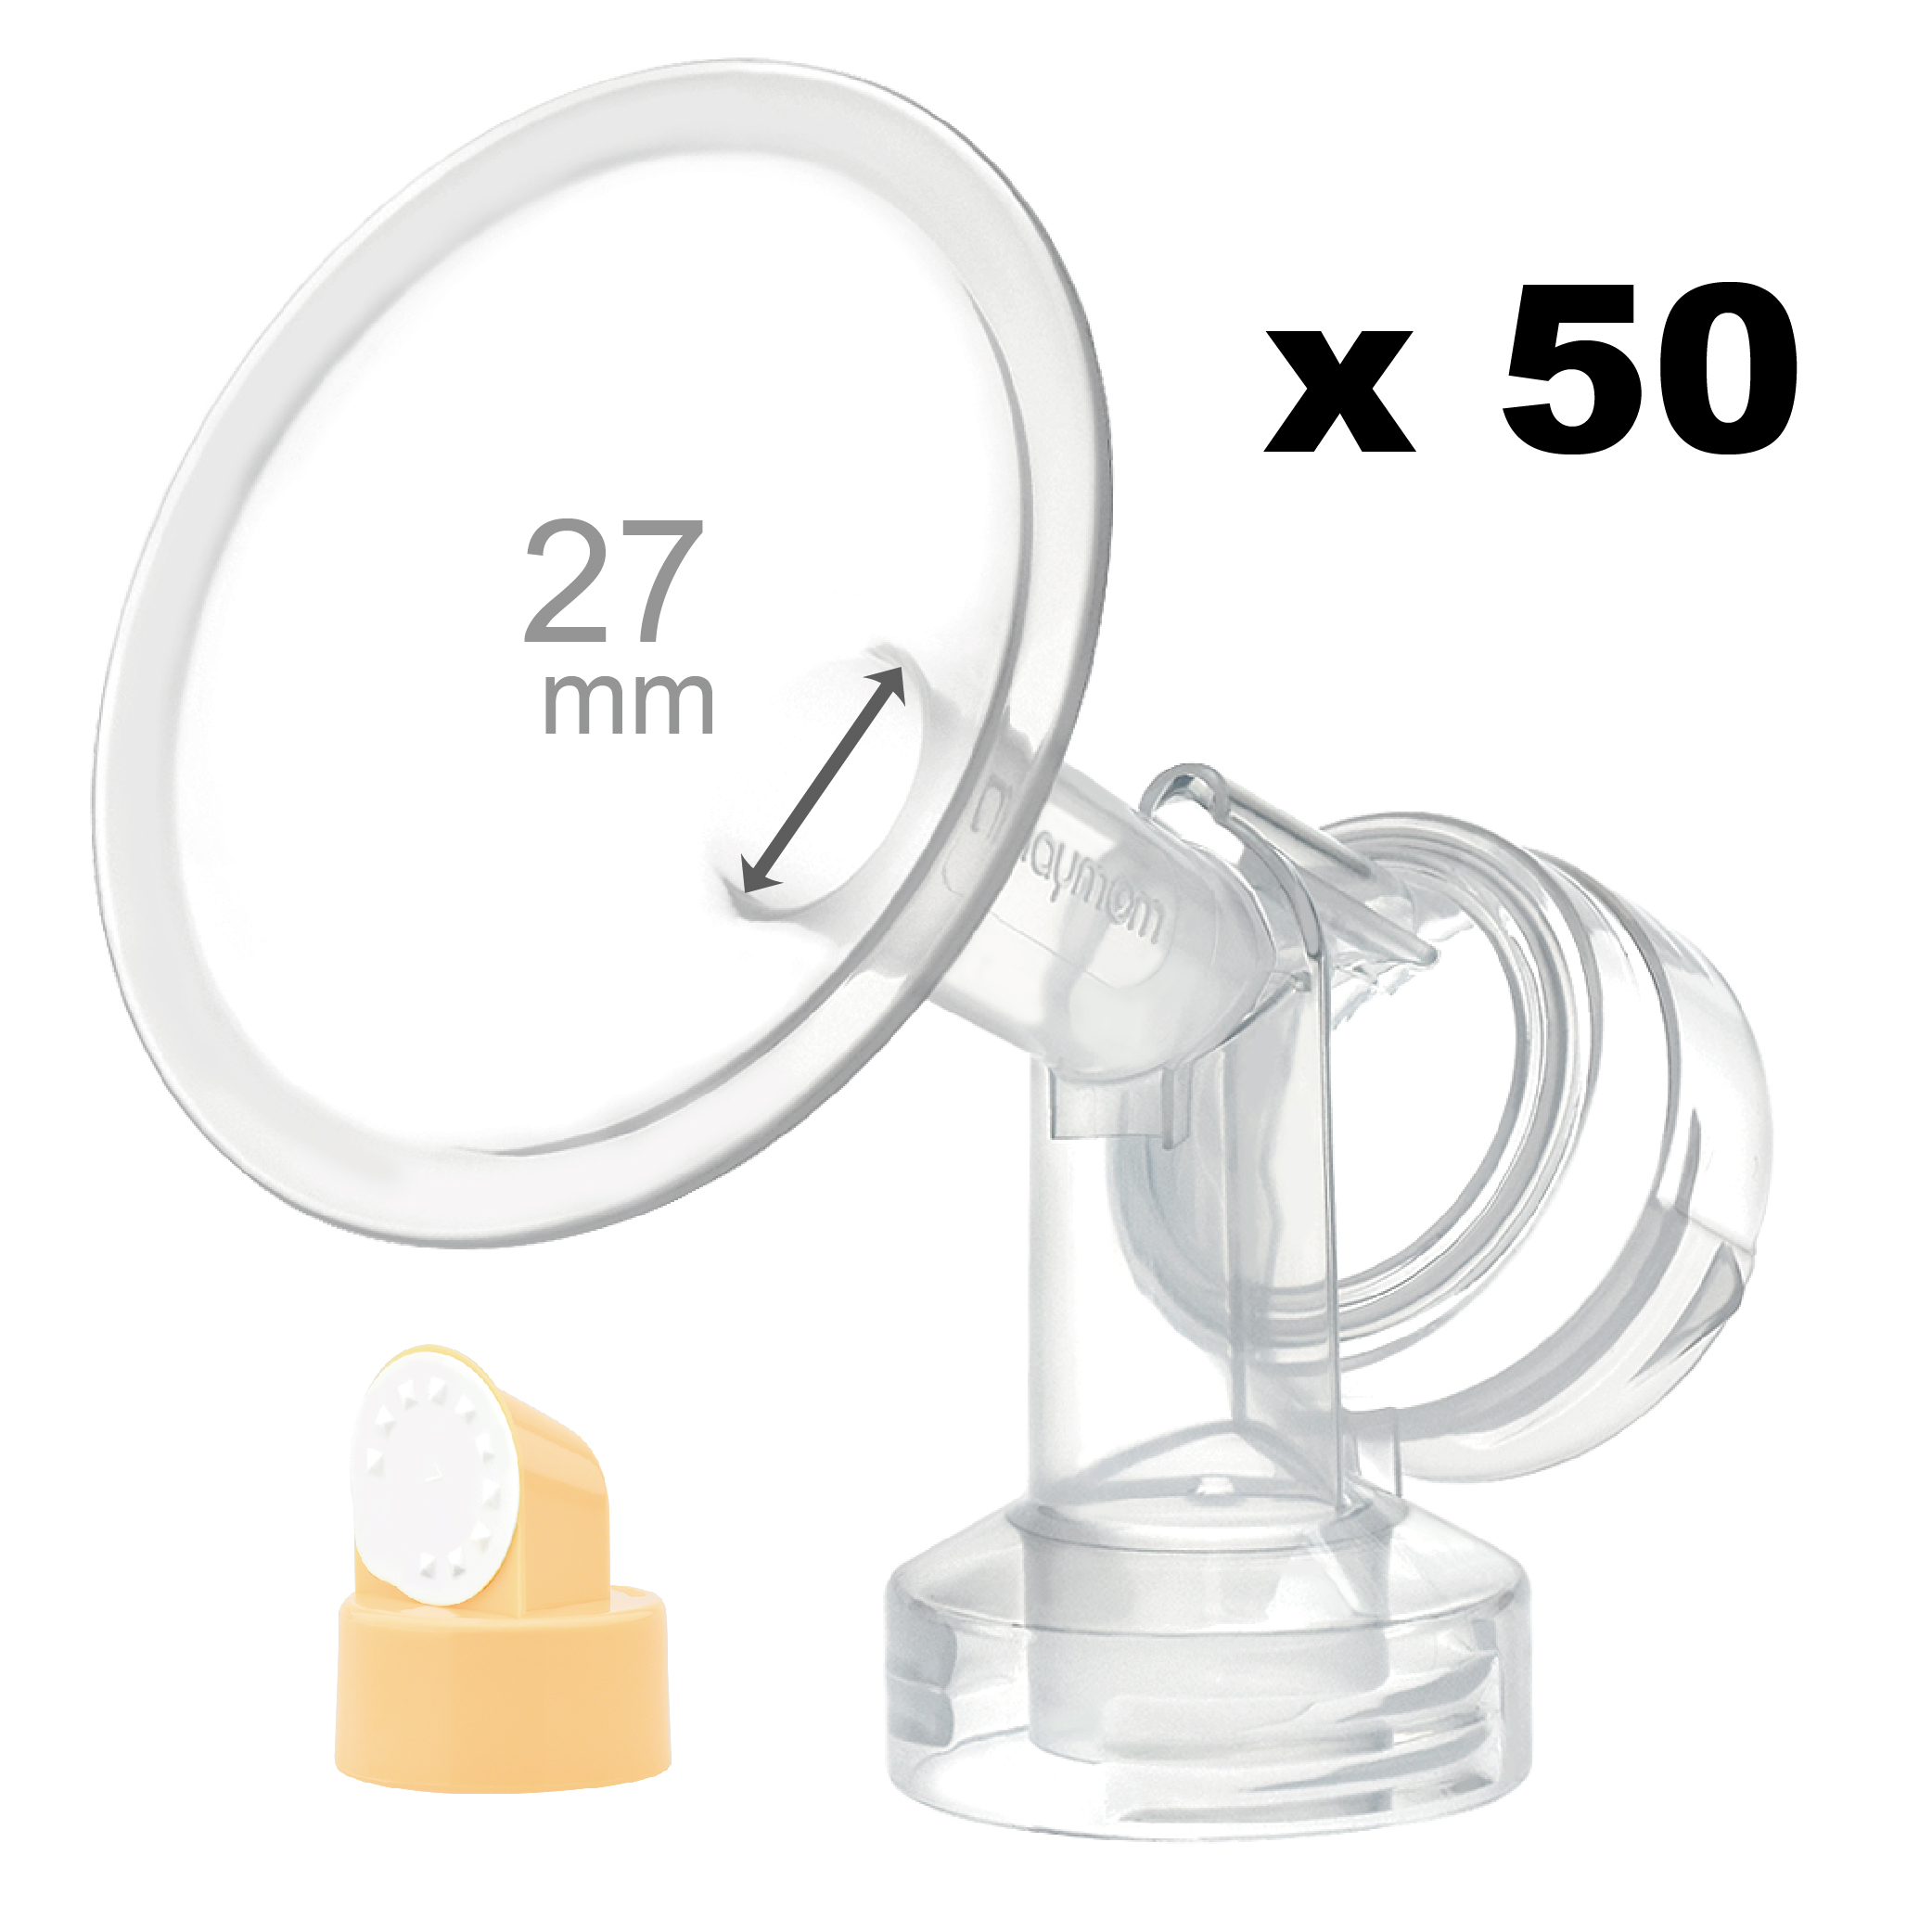 Breastshield (flange) with valve/membrane for Medela, 27 mm, 50 pc; Narrow (Standard) Bottle Neck